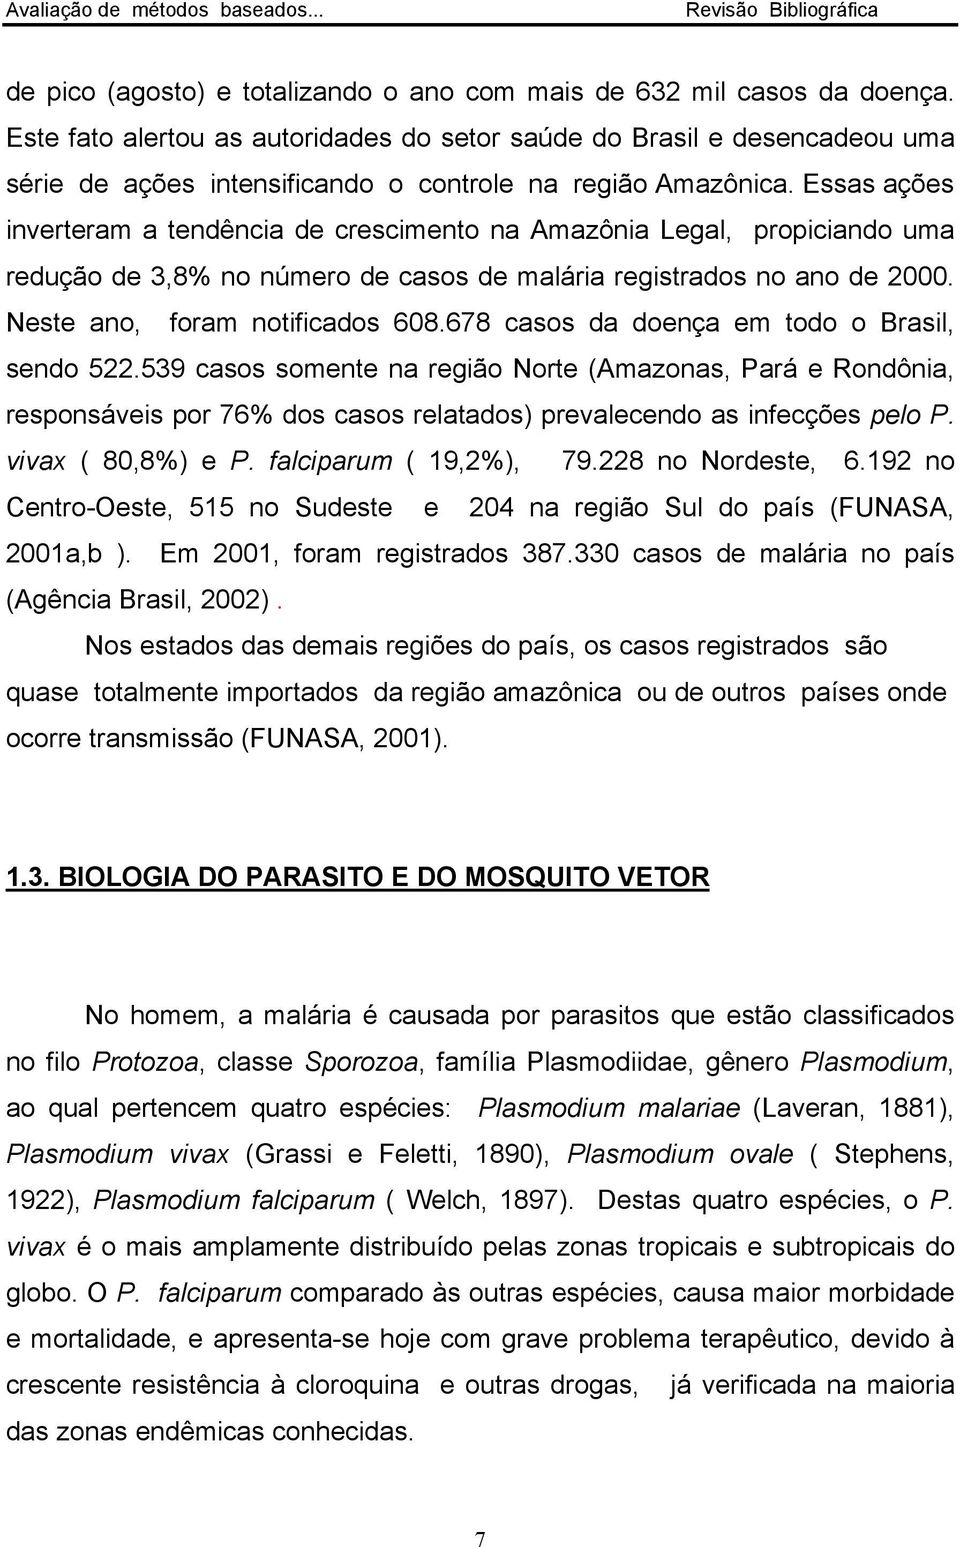 Essas ações inverteram a tendência de crescimento na Amazônia Legal, propiciando uma redução de 3,8% no número de casos de malária registrados no ano de 2000. Neste ano, foram notificados 608.